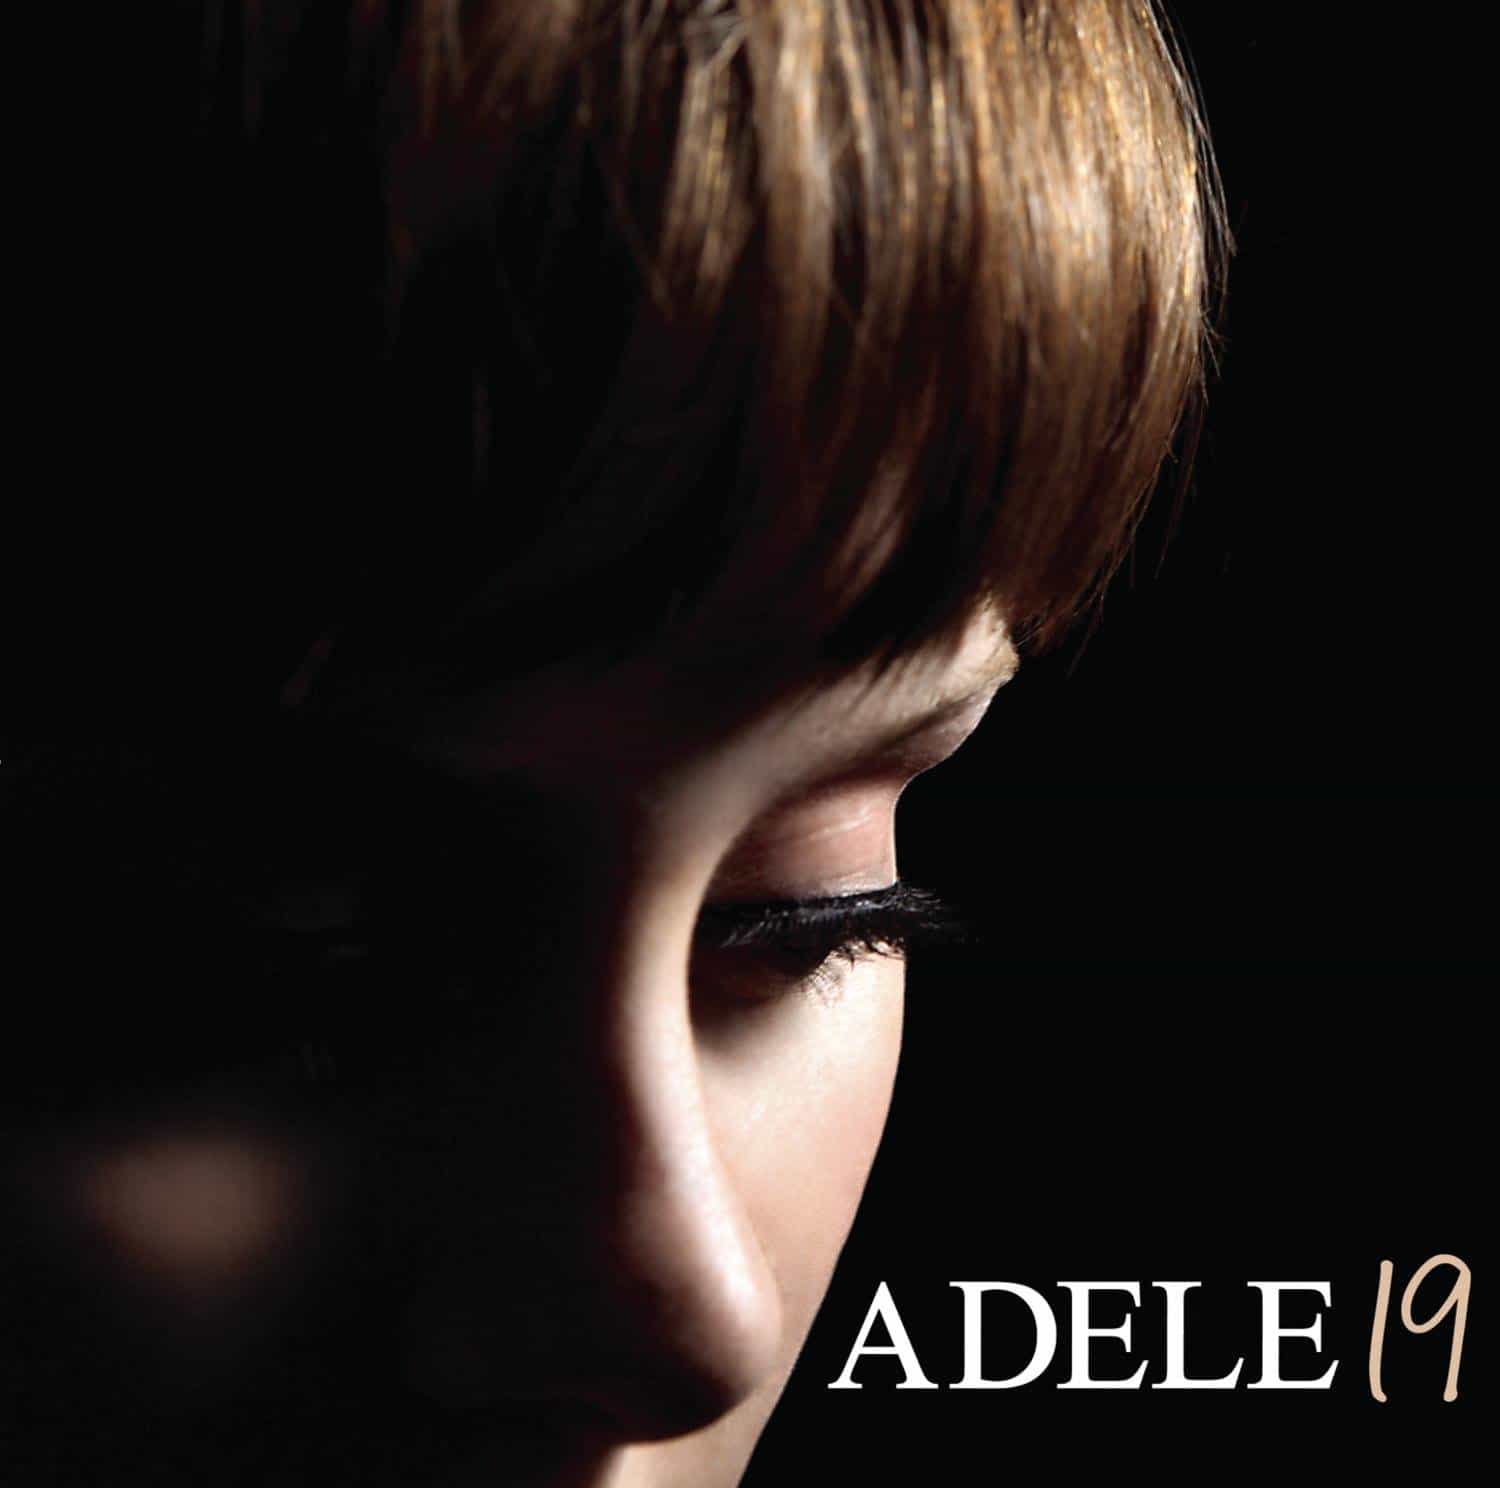 Adele-19-debut-vinyl-record-album-front